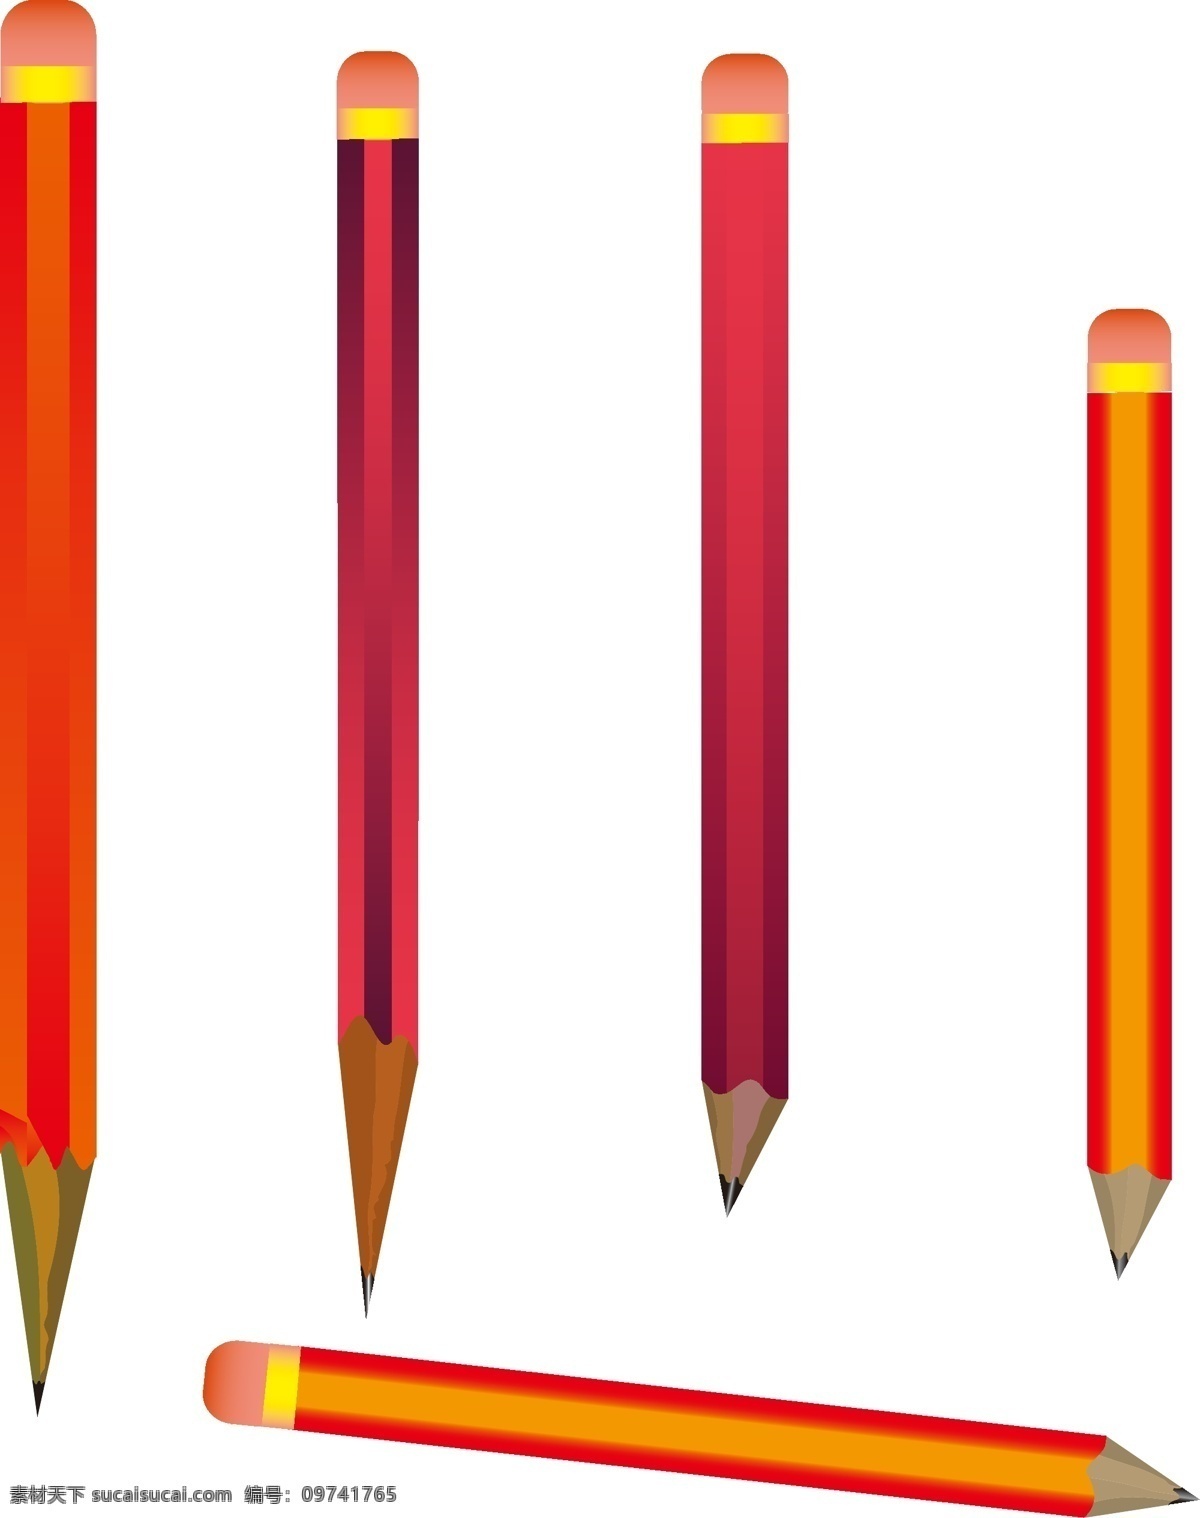 标识标志图标 铅笔 铅笔矢量图 小图标 矢量图 矢量 模板下载 多色铅笔 削铅笔 长短铅笔 铅笔工具 自己矢量图形 其他矢量图